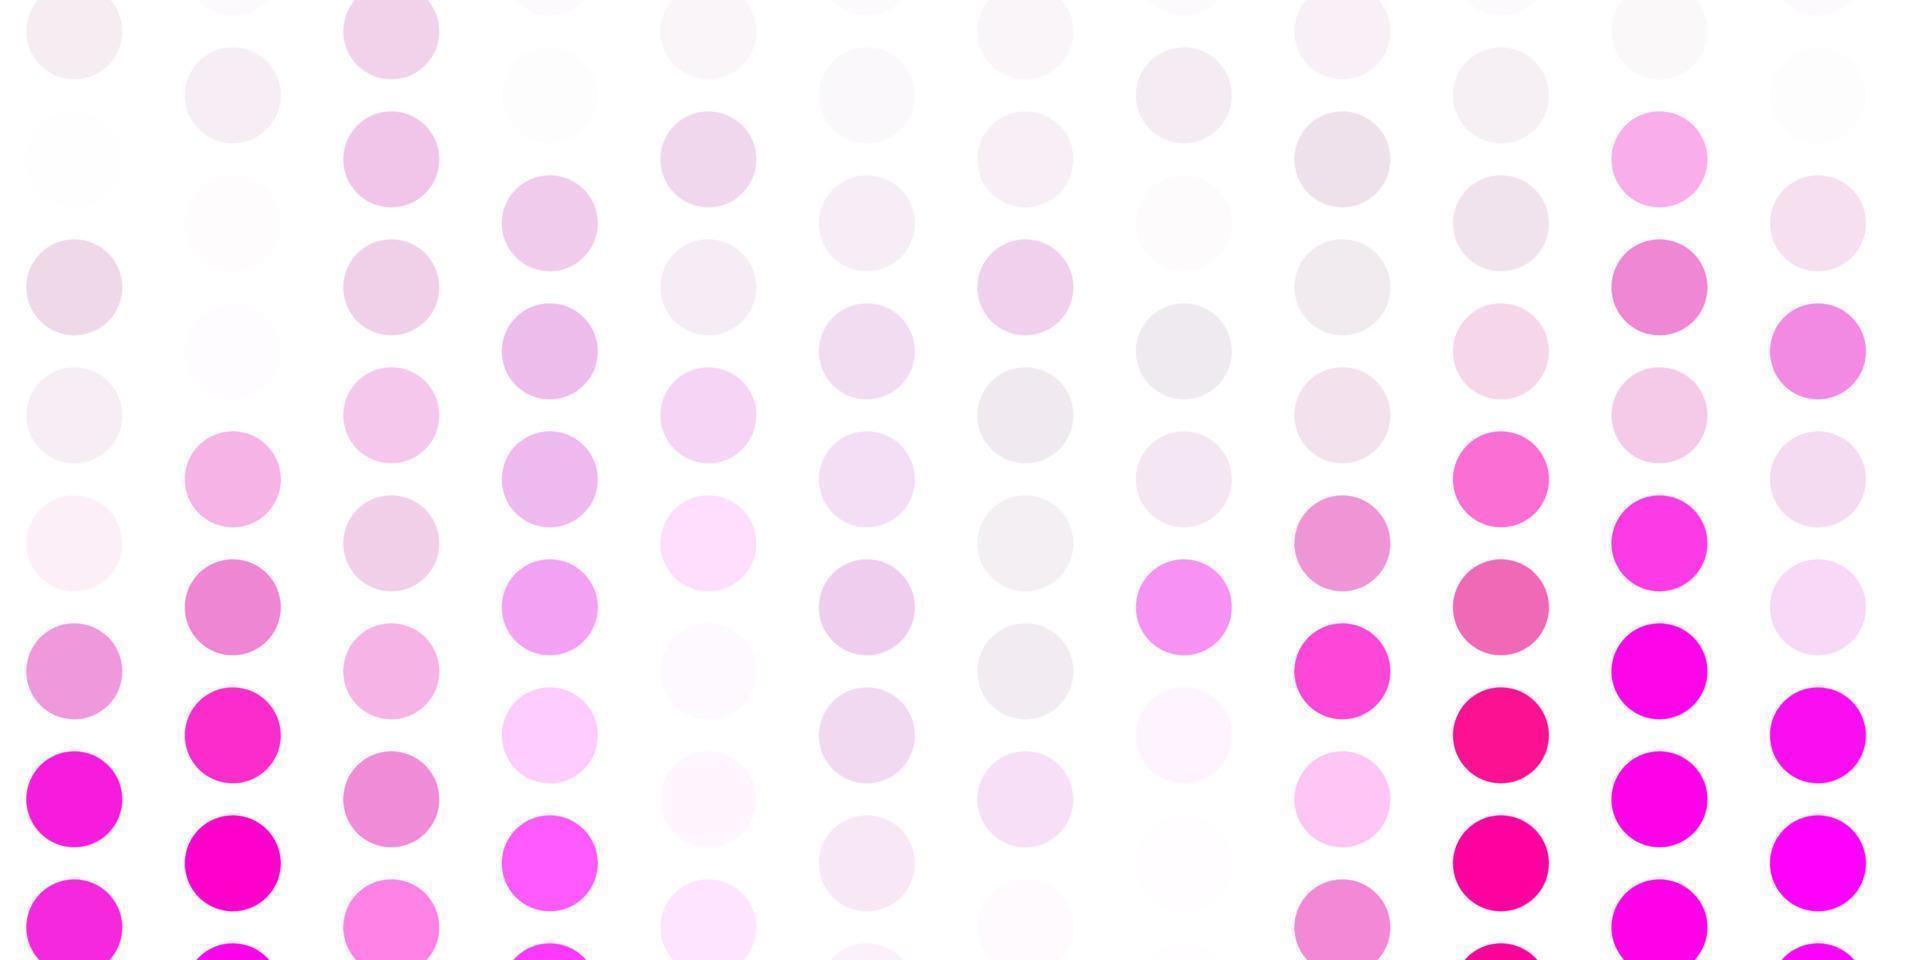 plantilla de vector rosa claro con círculos.